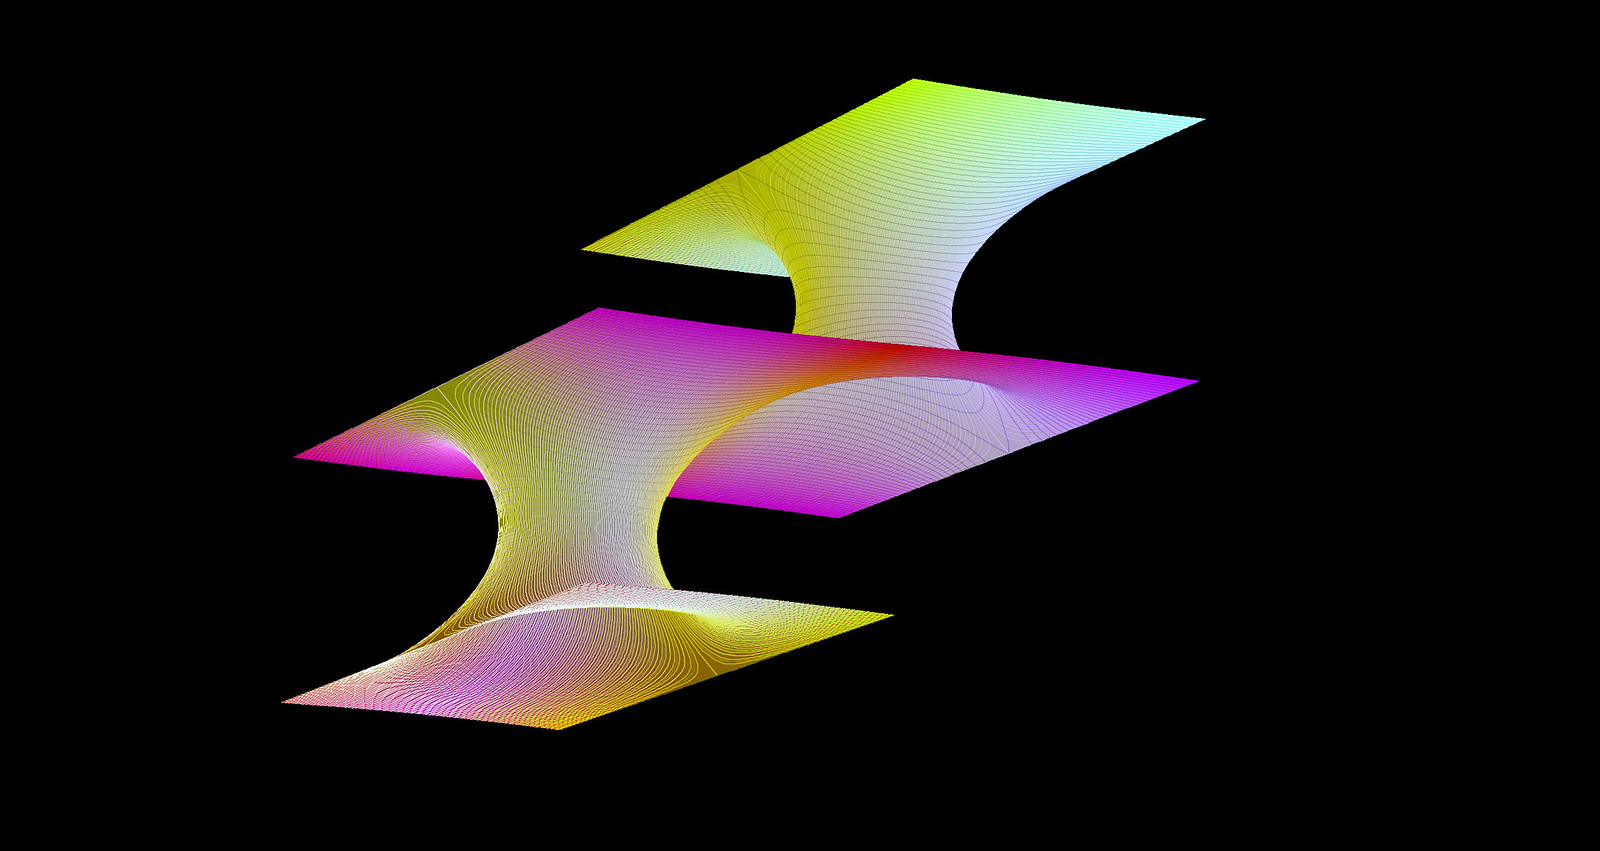 Rectangular Tori, Gauss Map=JE